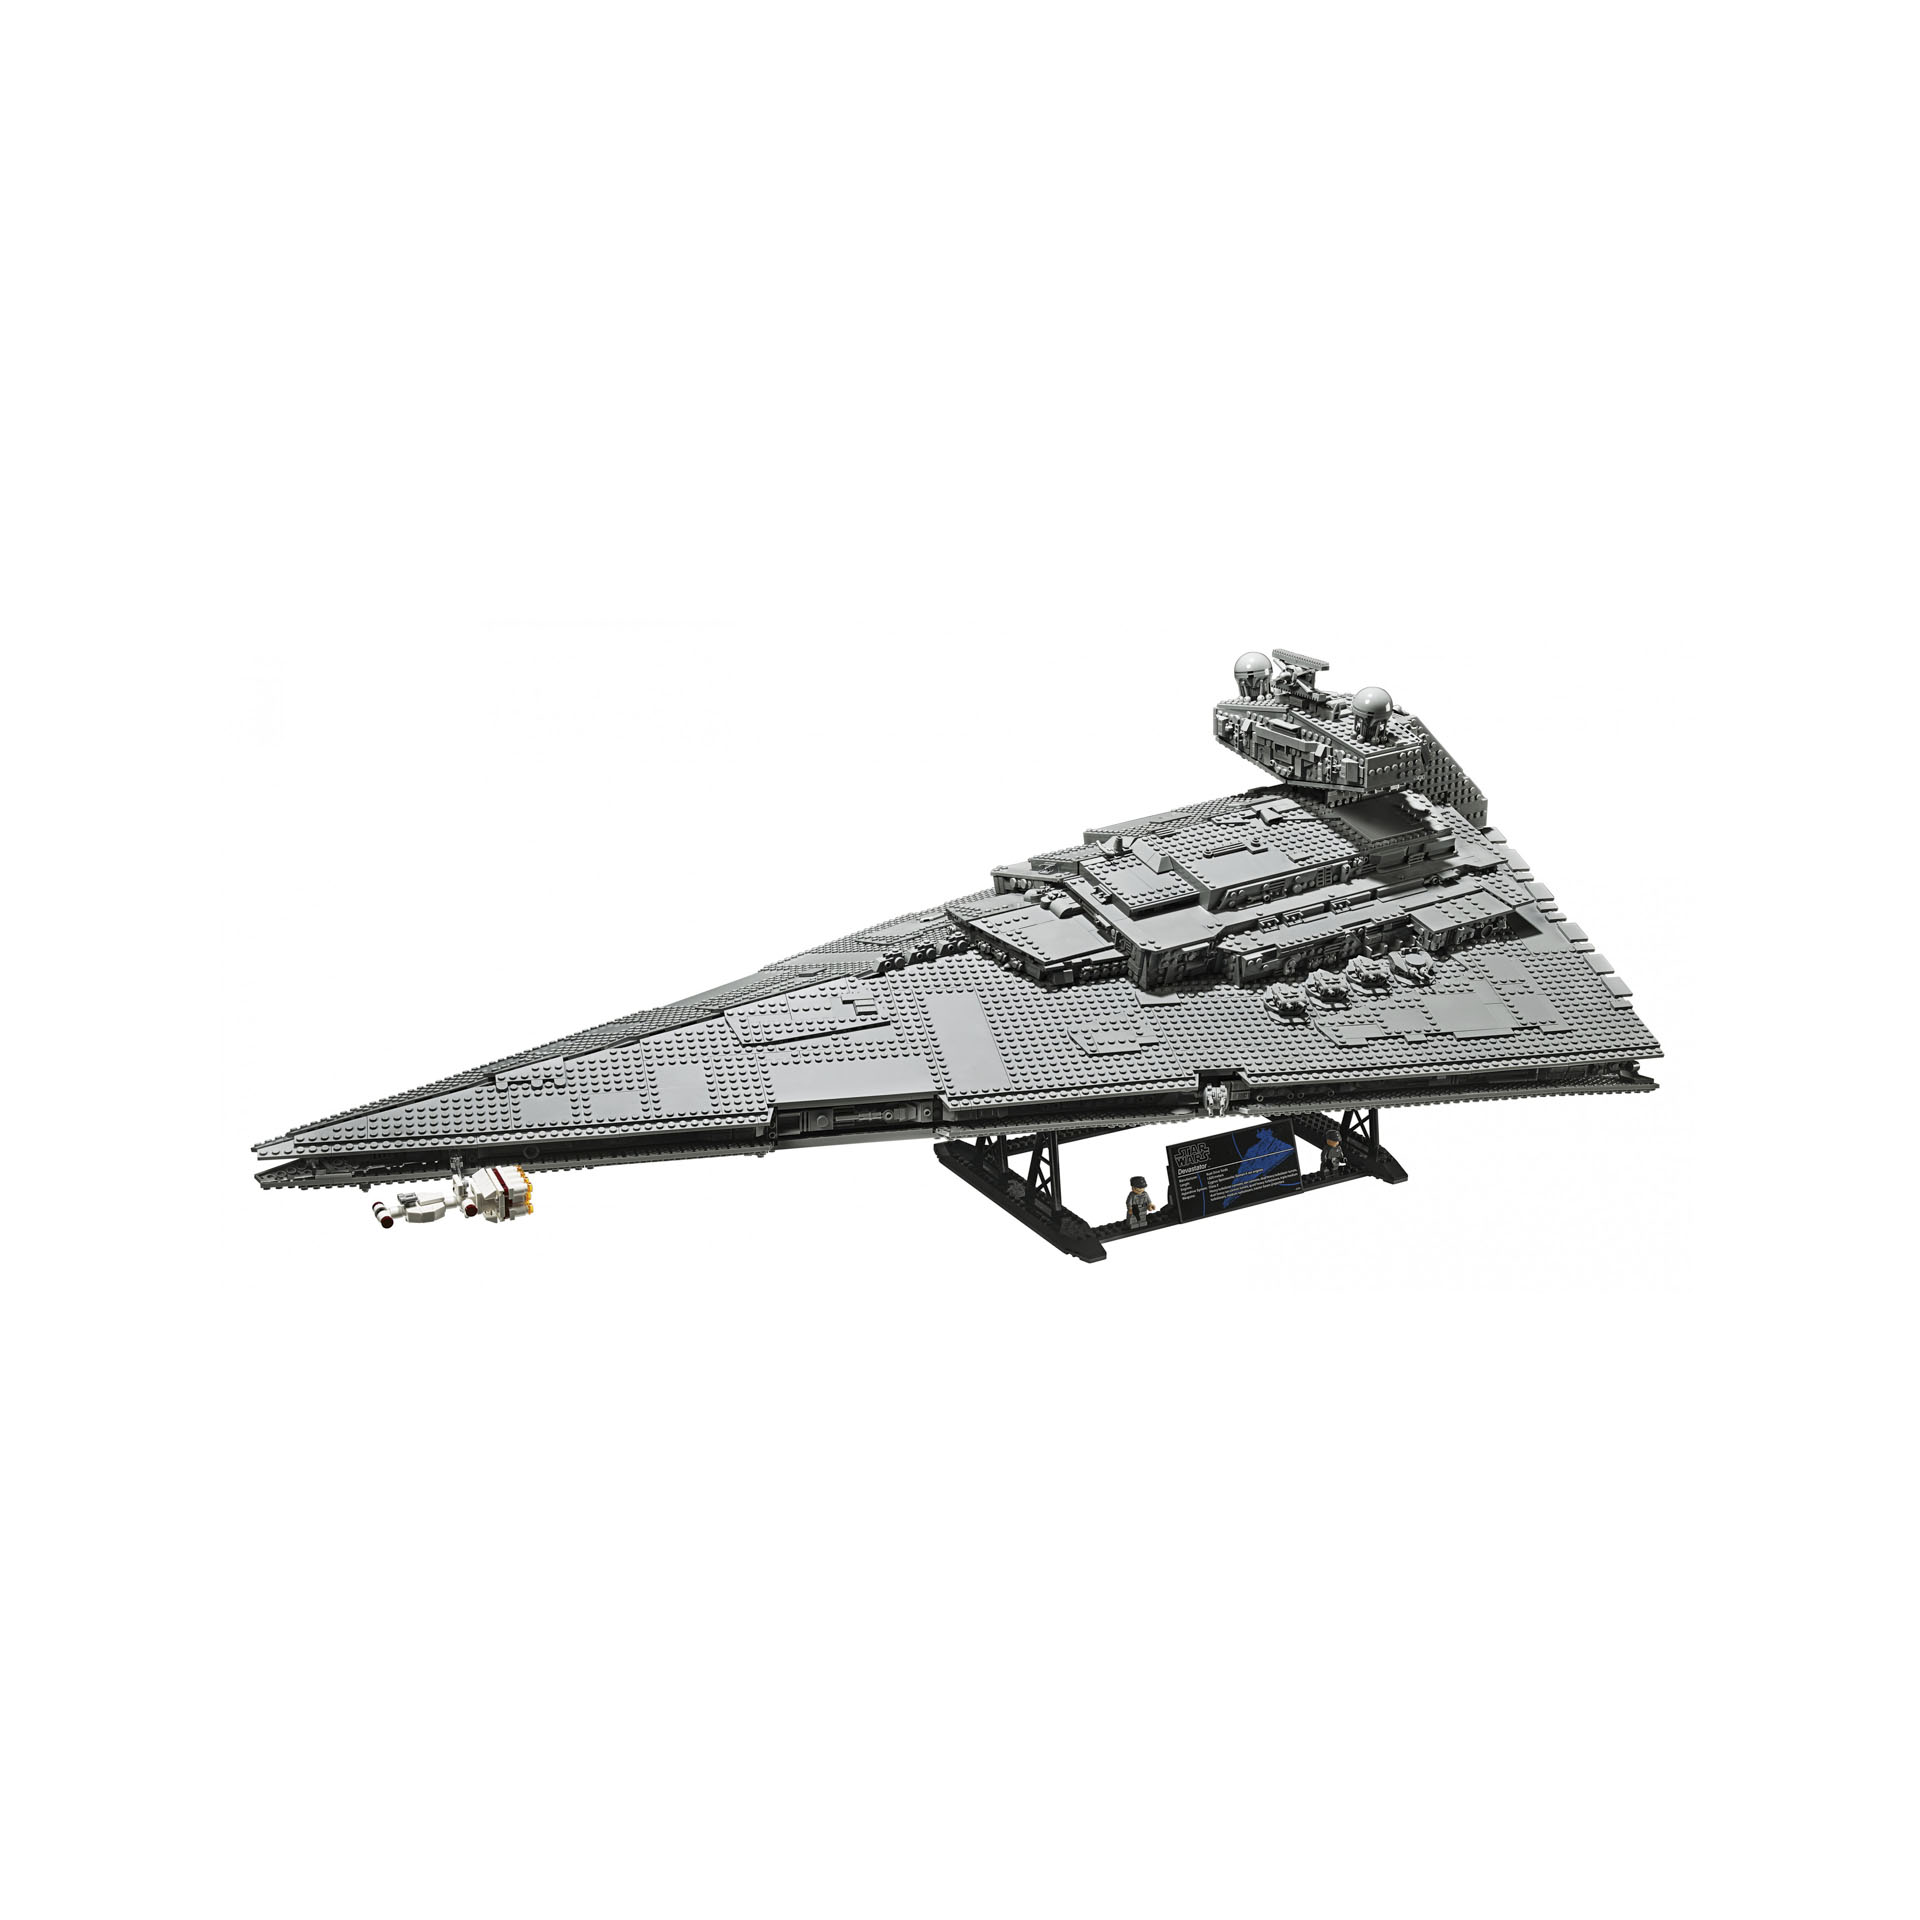 LEGO Start Wars Imperial Star Destroyer 75252 75252, , large